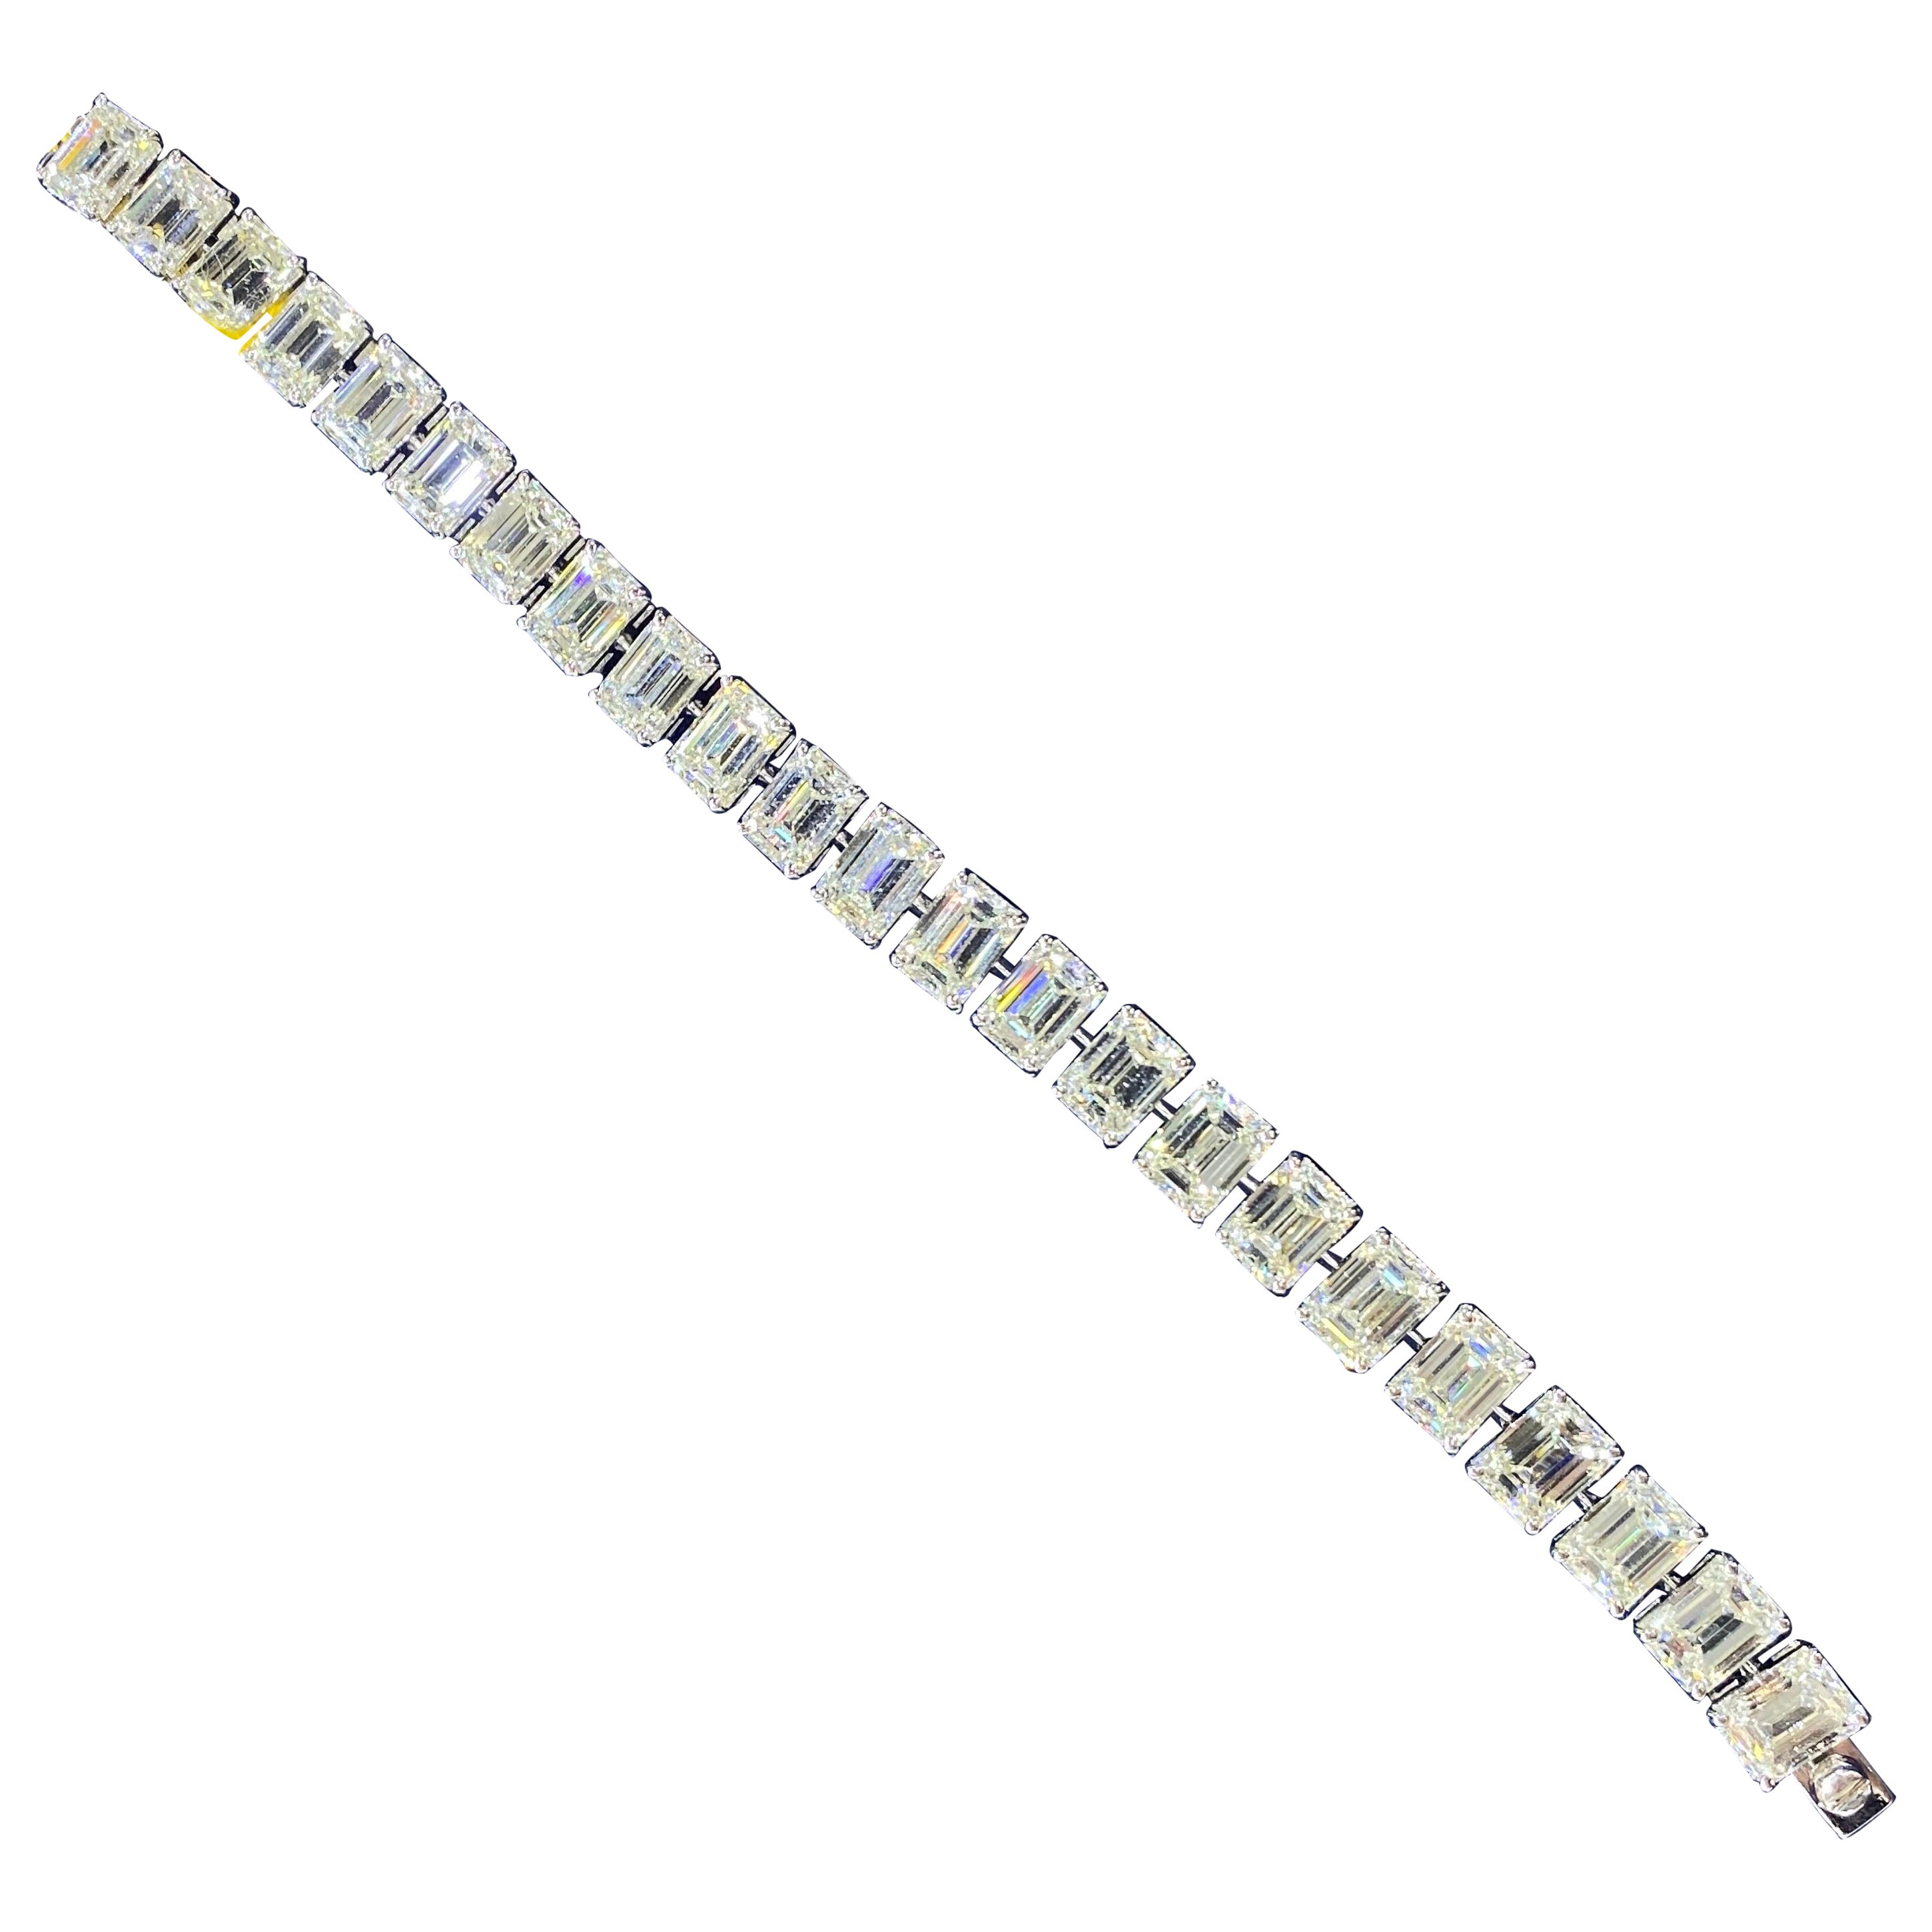 Certified 39.59 Carat Emerald Cut Diamond Tennis Bracelet (1.5 Carat Each) For Sale